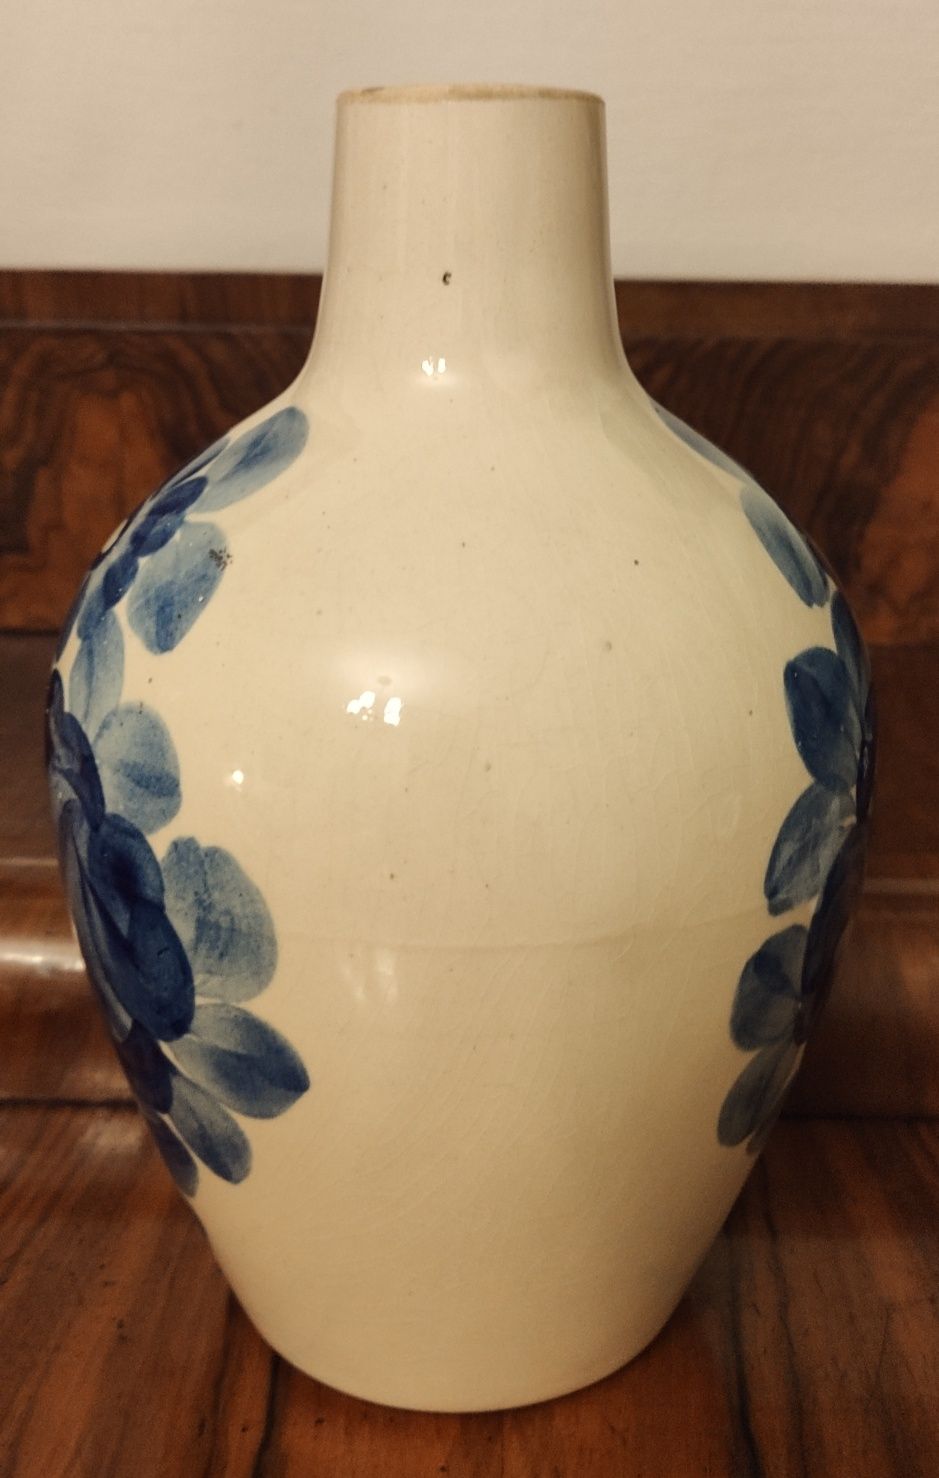 Duży wazon fajans Włocławek ręcznie malowany